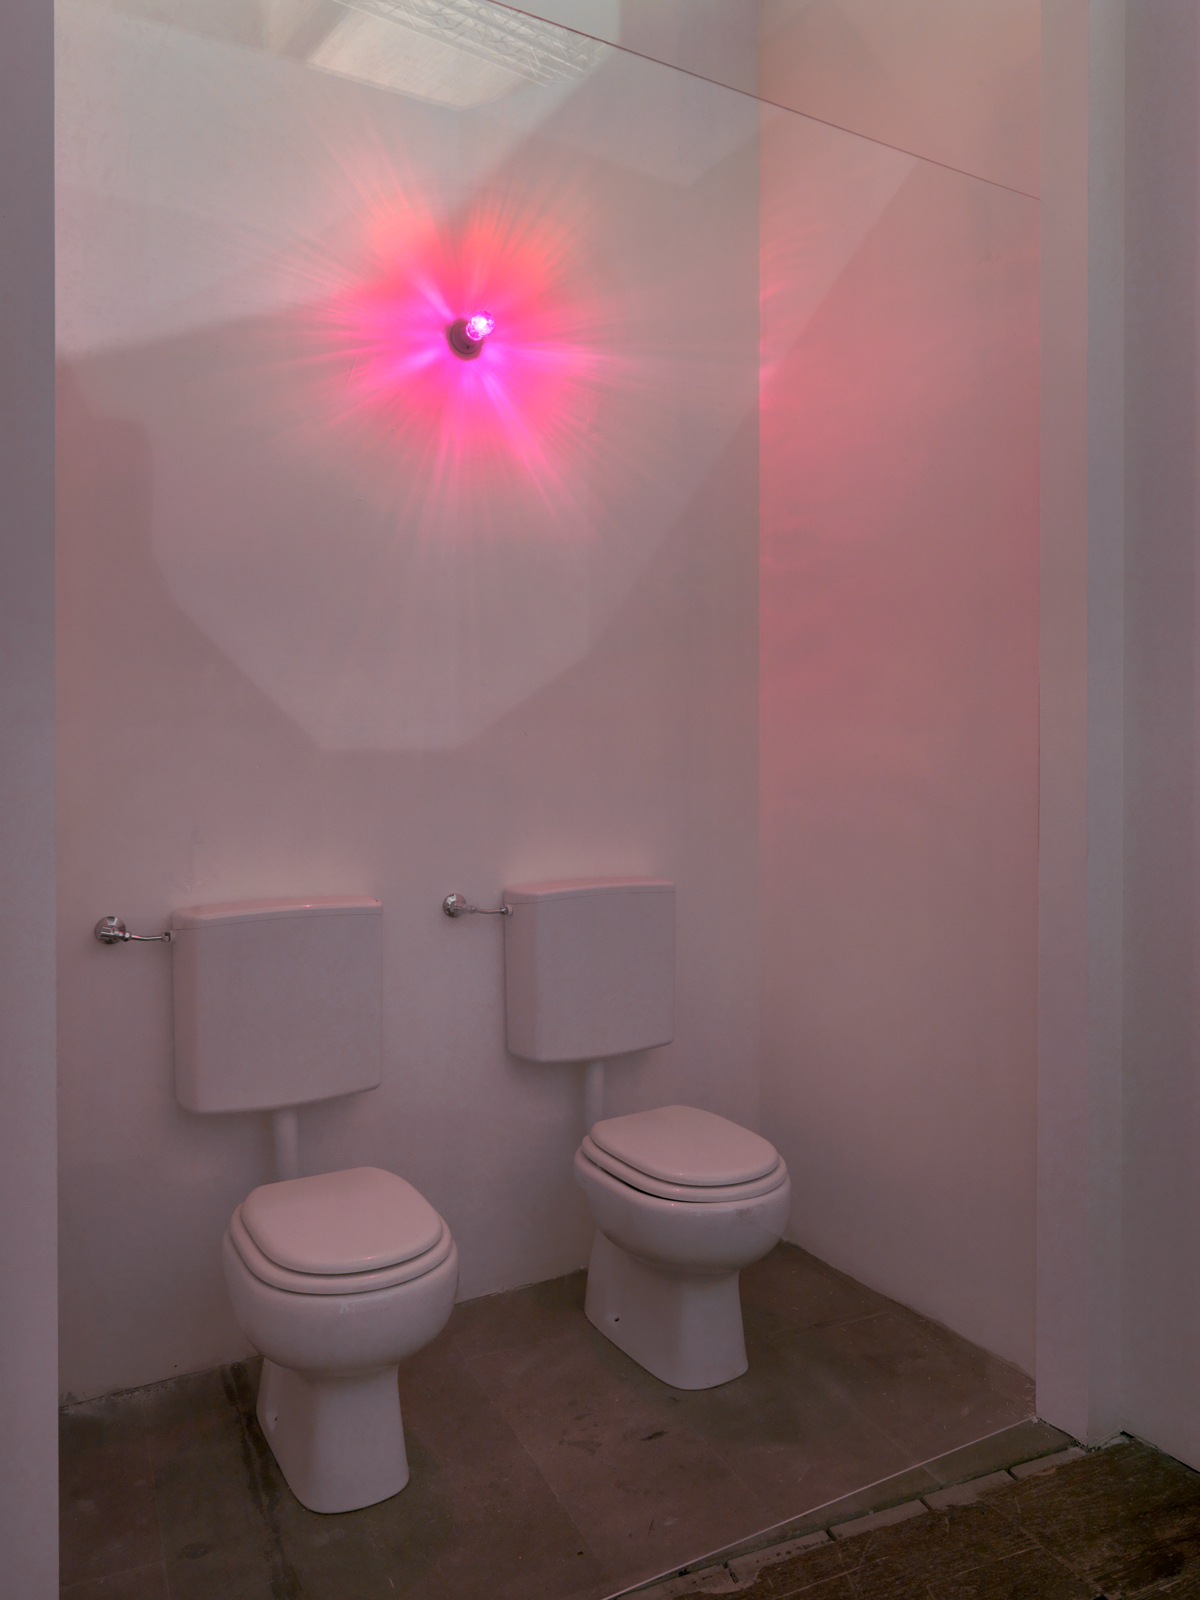 Franz West / "Extroversion", installation view, "Illuminations", Venice Biennale, 2011 / 2011